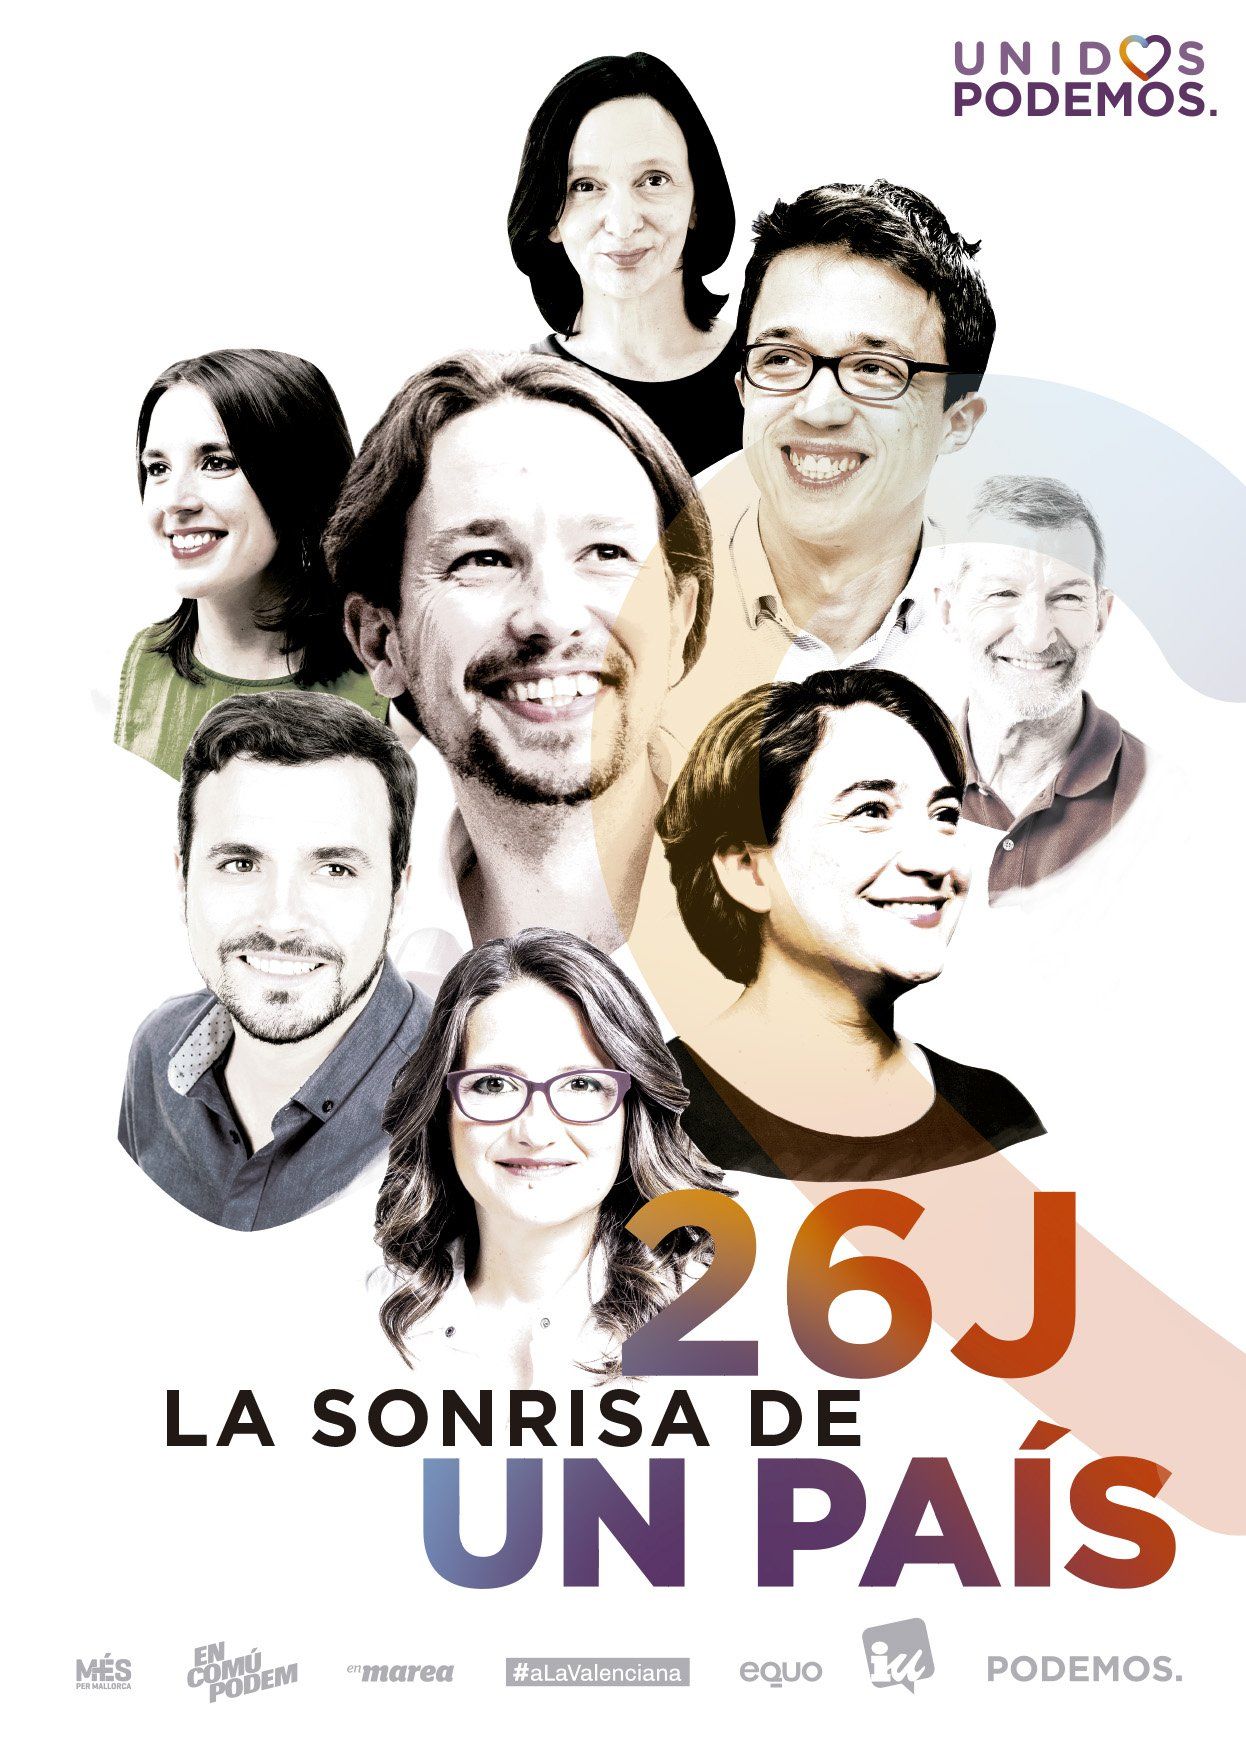 ¿Por qué sale Colau y no Domènech en el cartel de Podemos?